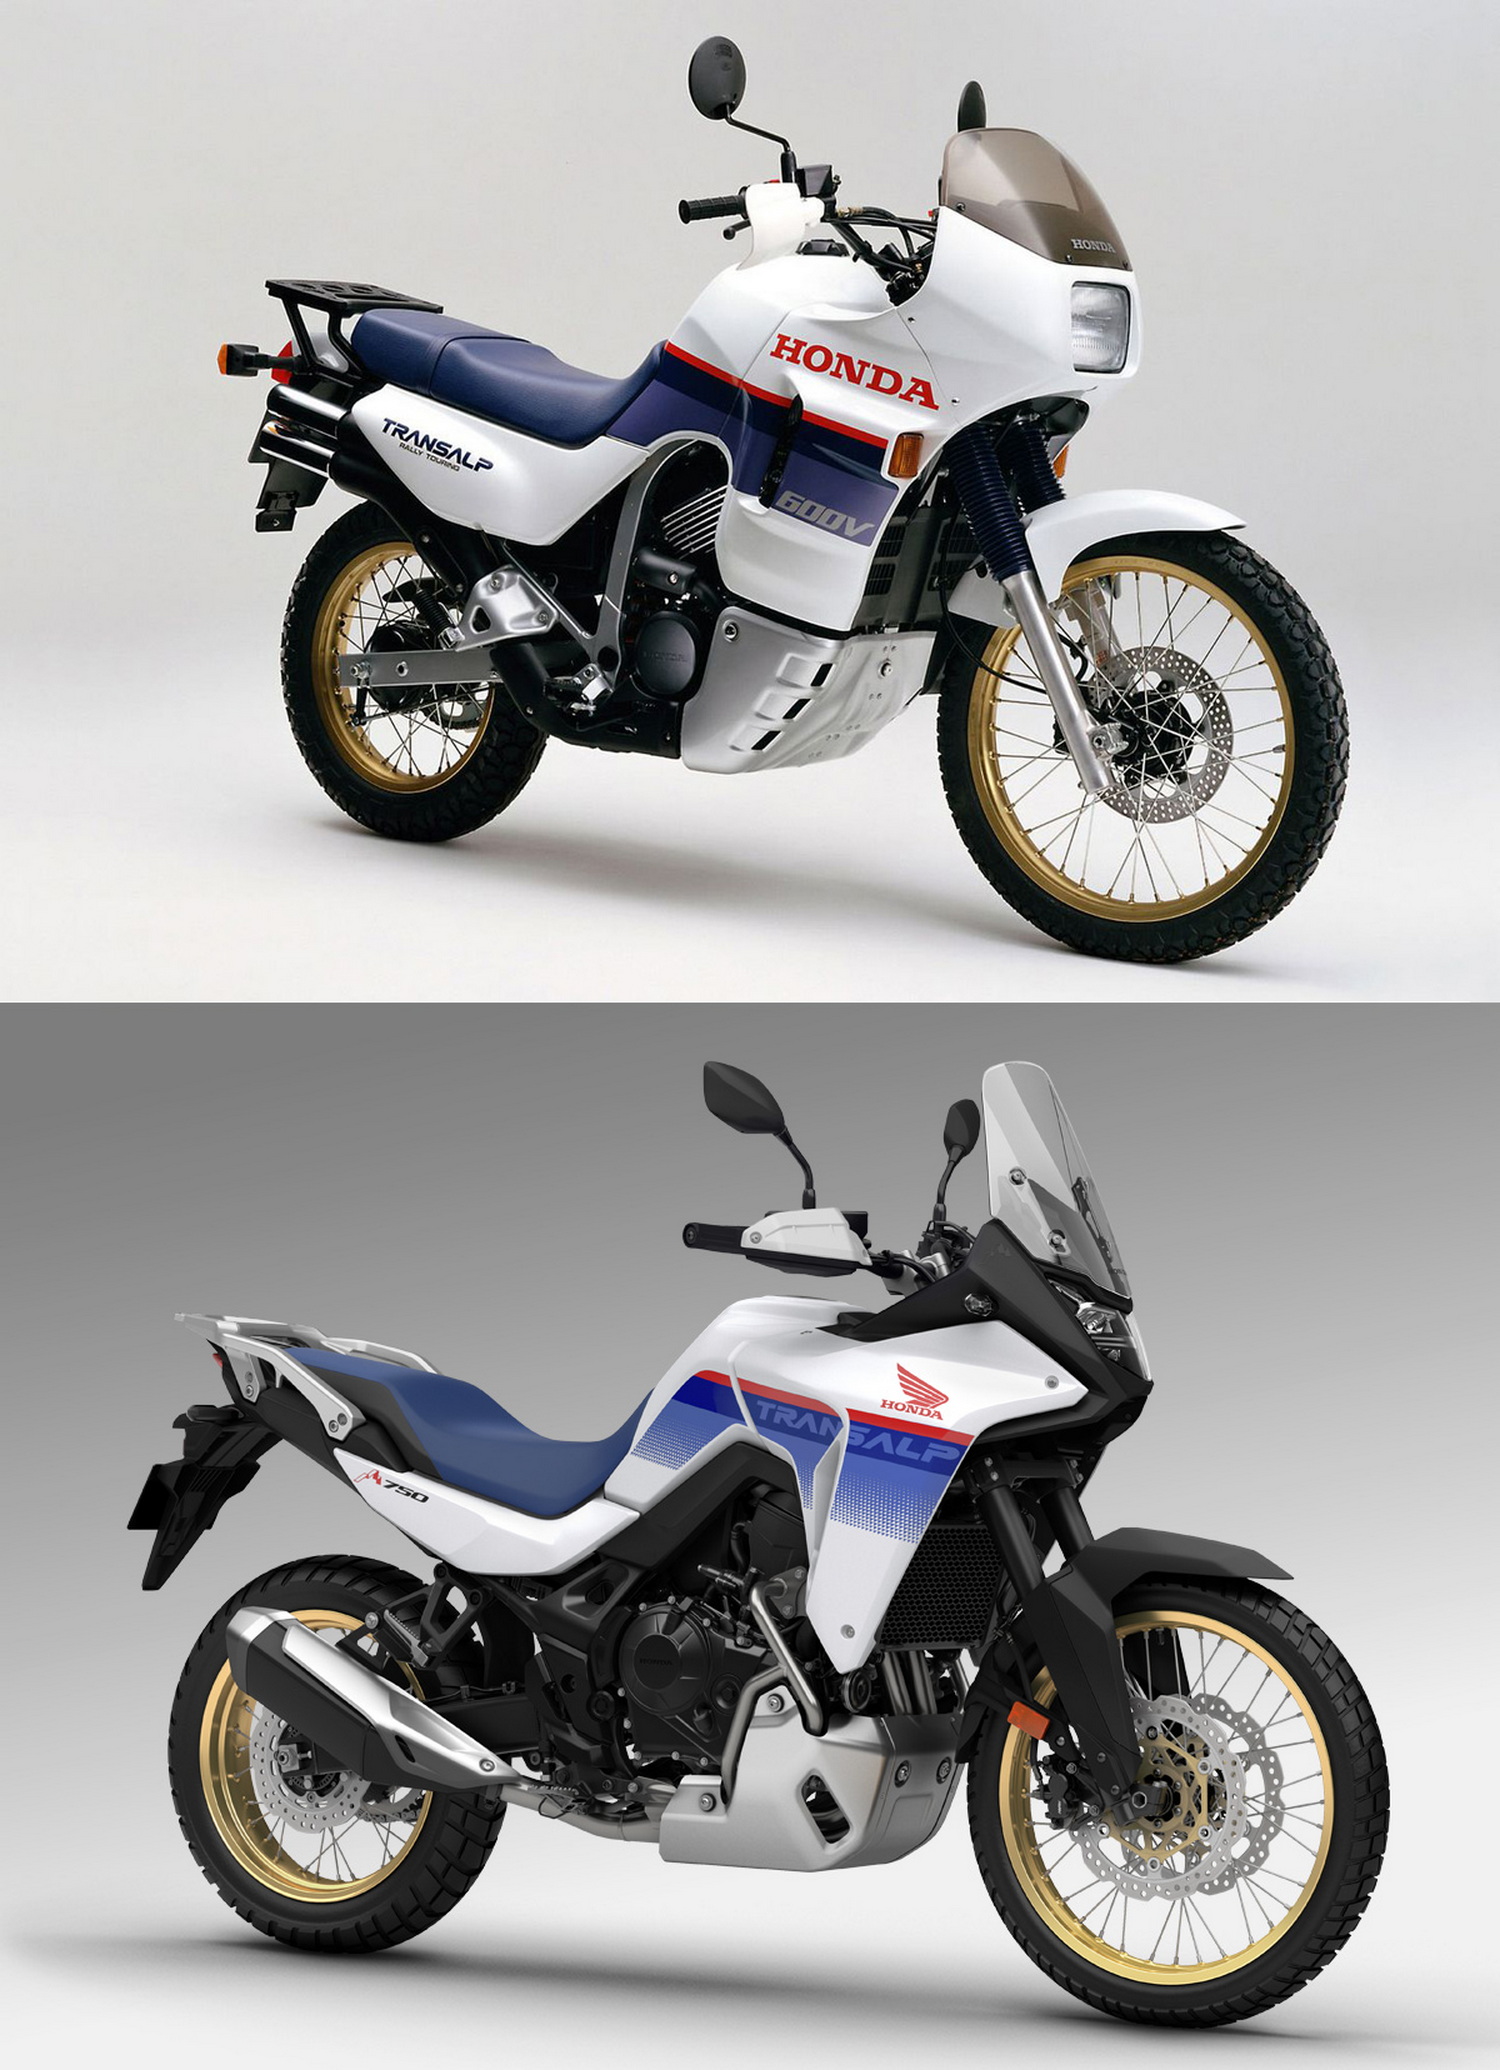 Trennt 35 Jahre Motorradtechnik - 1988er und 2023er Modell